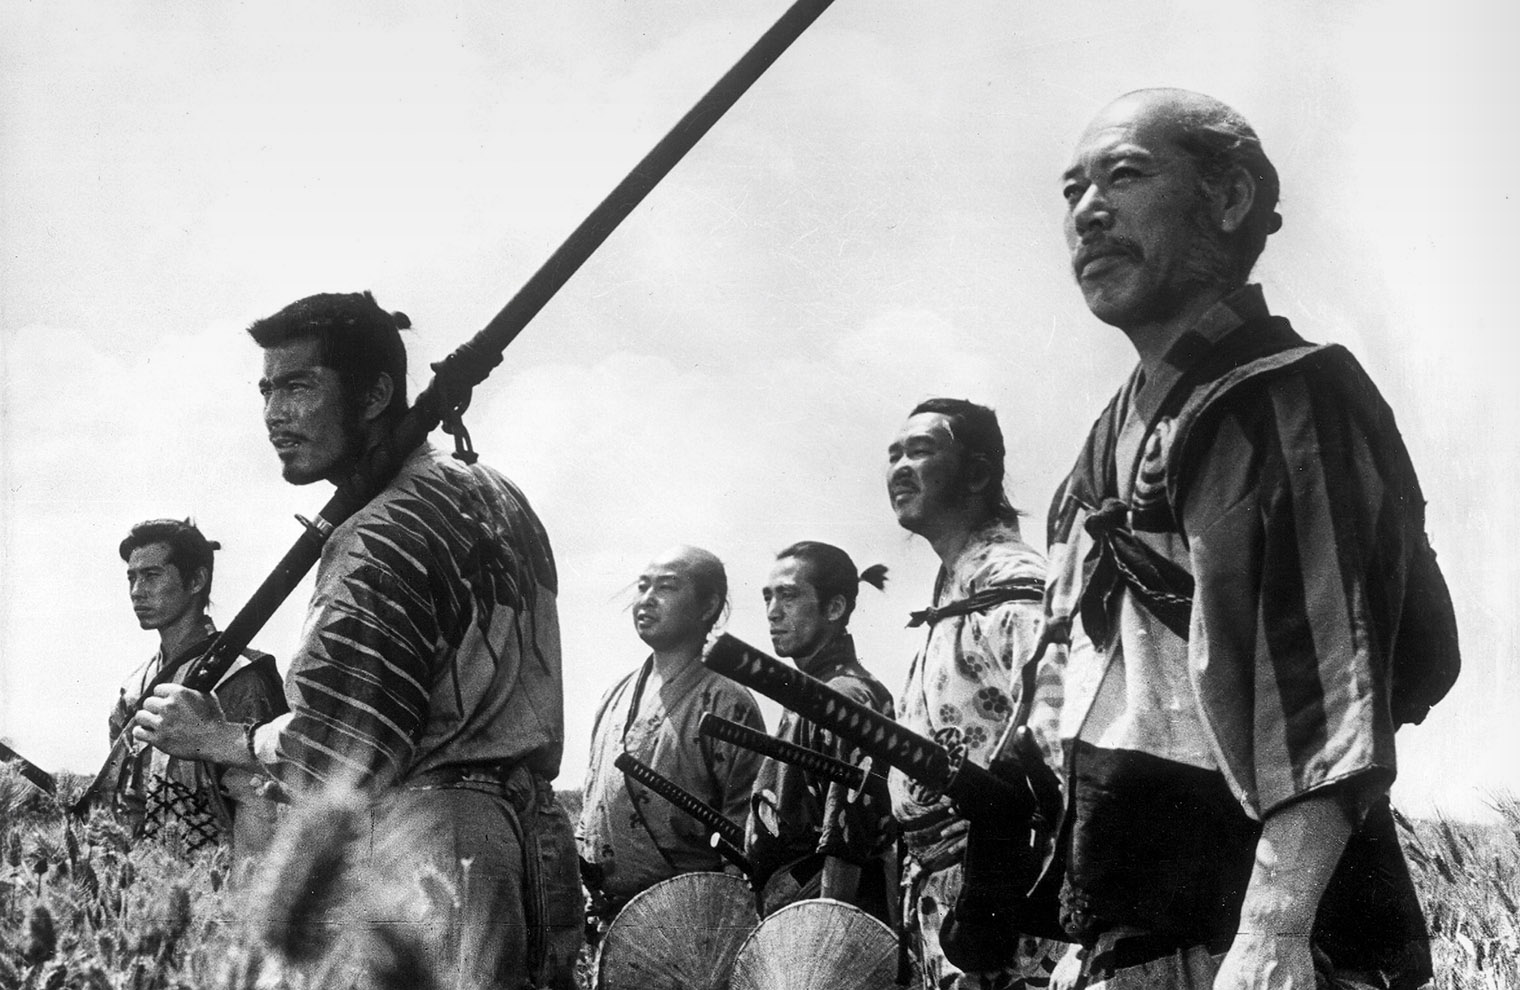 Изначально режиссер Акира Куросава планировал снять фильм о дне из жизни обычного самурая. Позже он развил идею до экшен-драмы о защите деревни. Источник: Toho